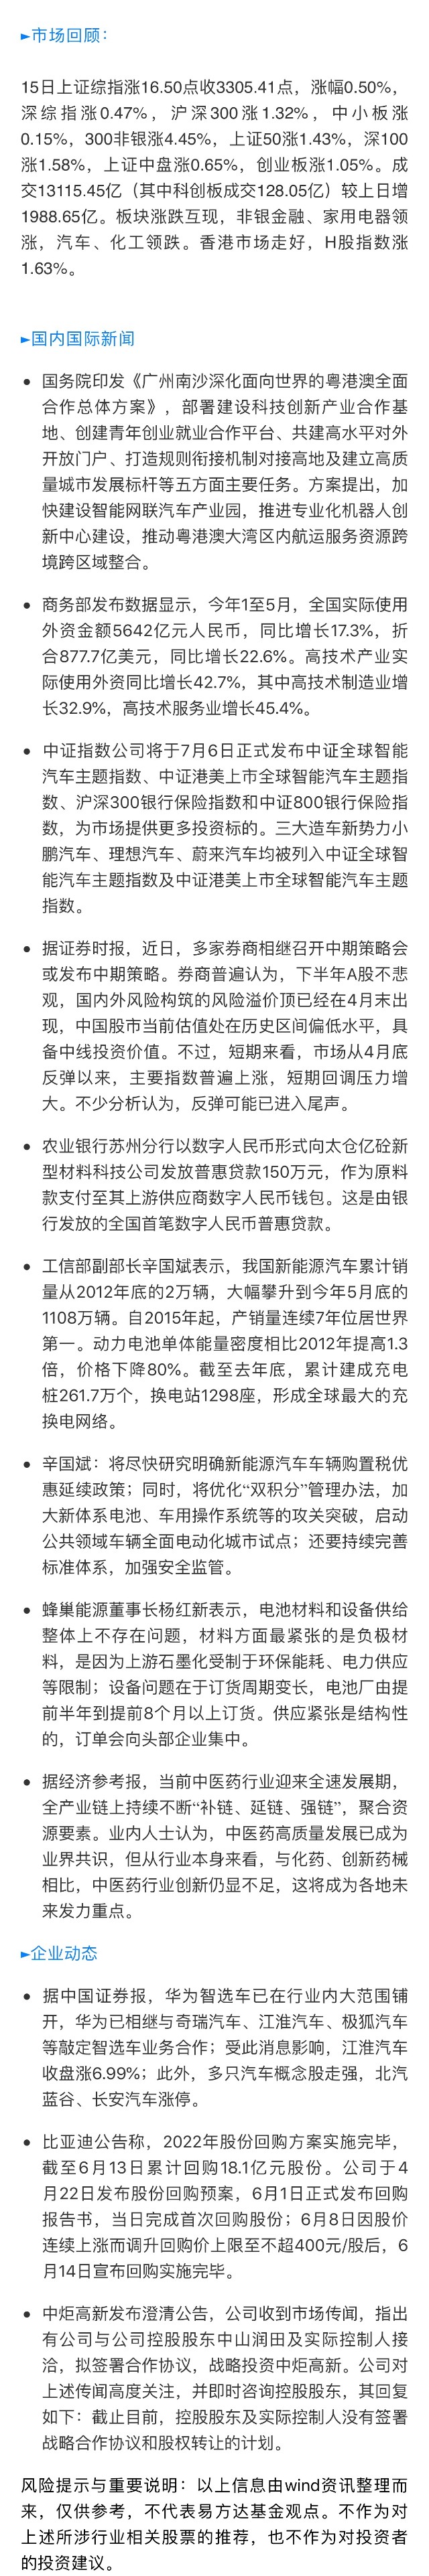 易方达财经晨信 6月16日 易方达蓝筹精选混合 Of0057 股吧 东方财富网股吧